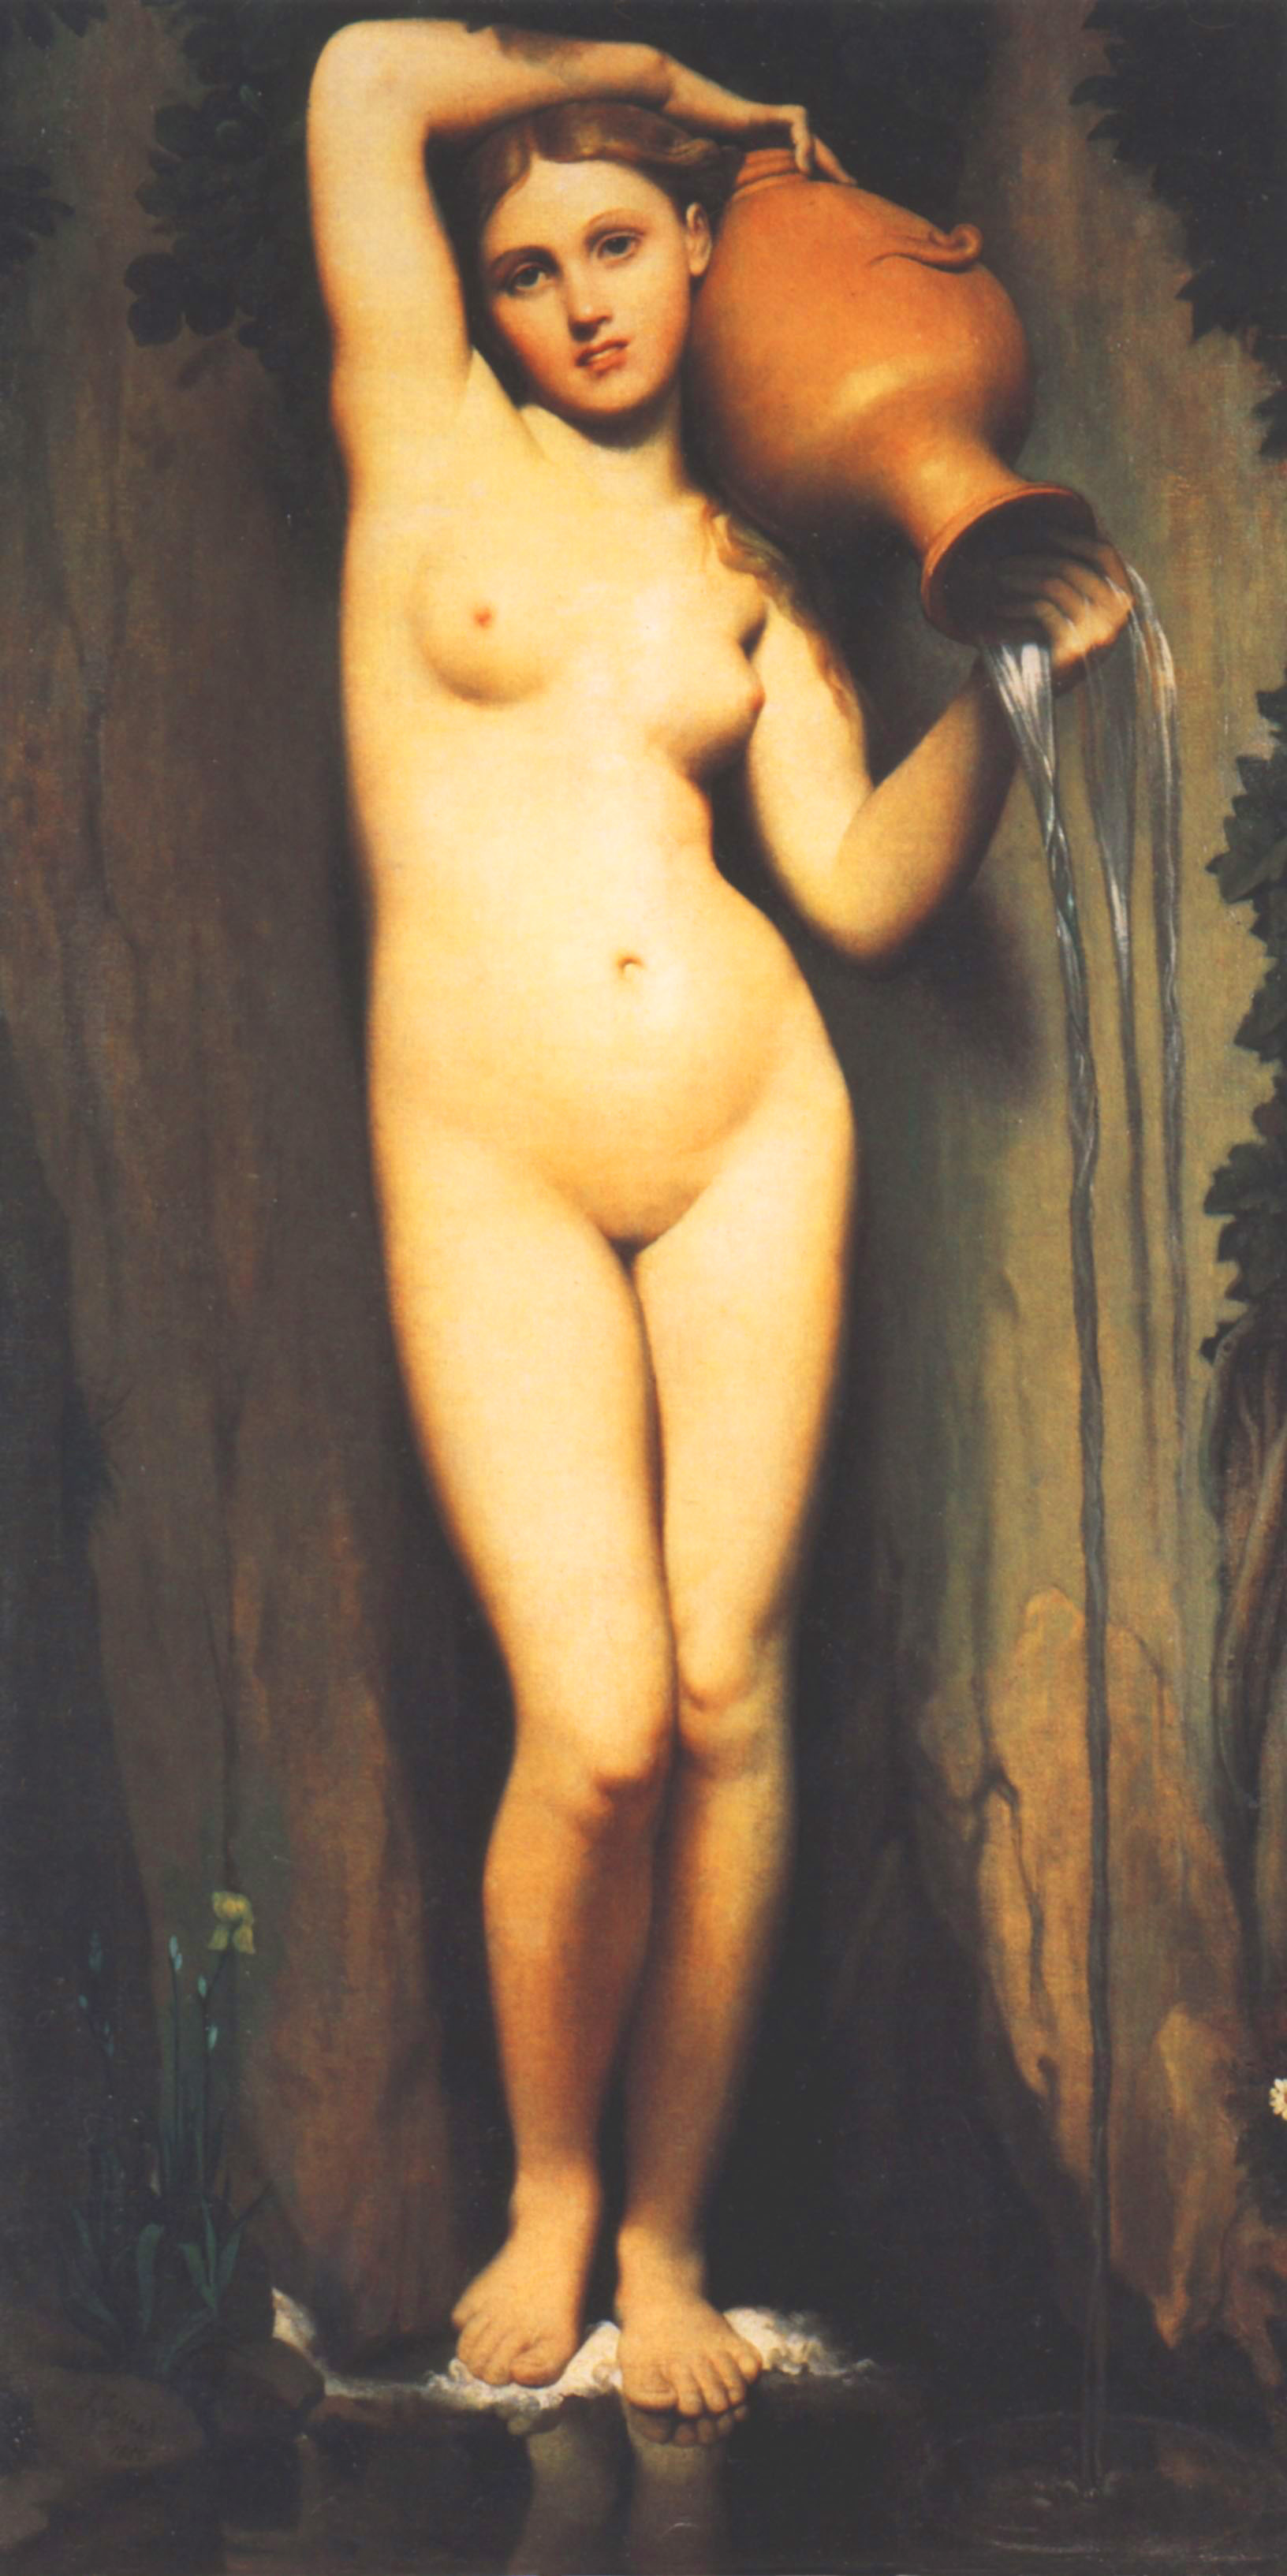 泉_安格尔最美的女性人体油画作品《泉》高清图片赏析